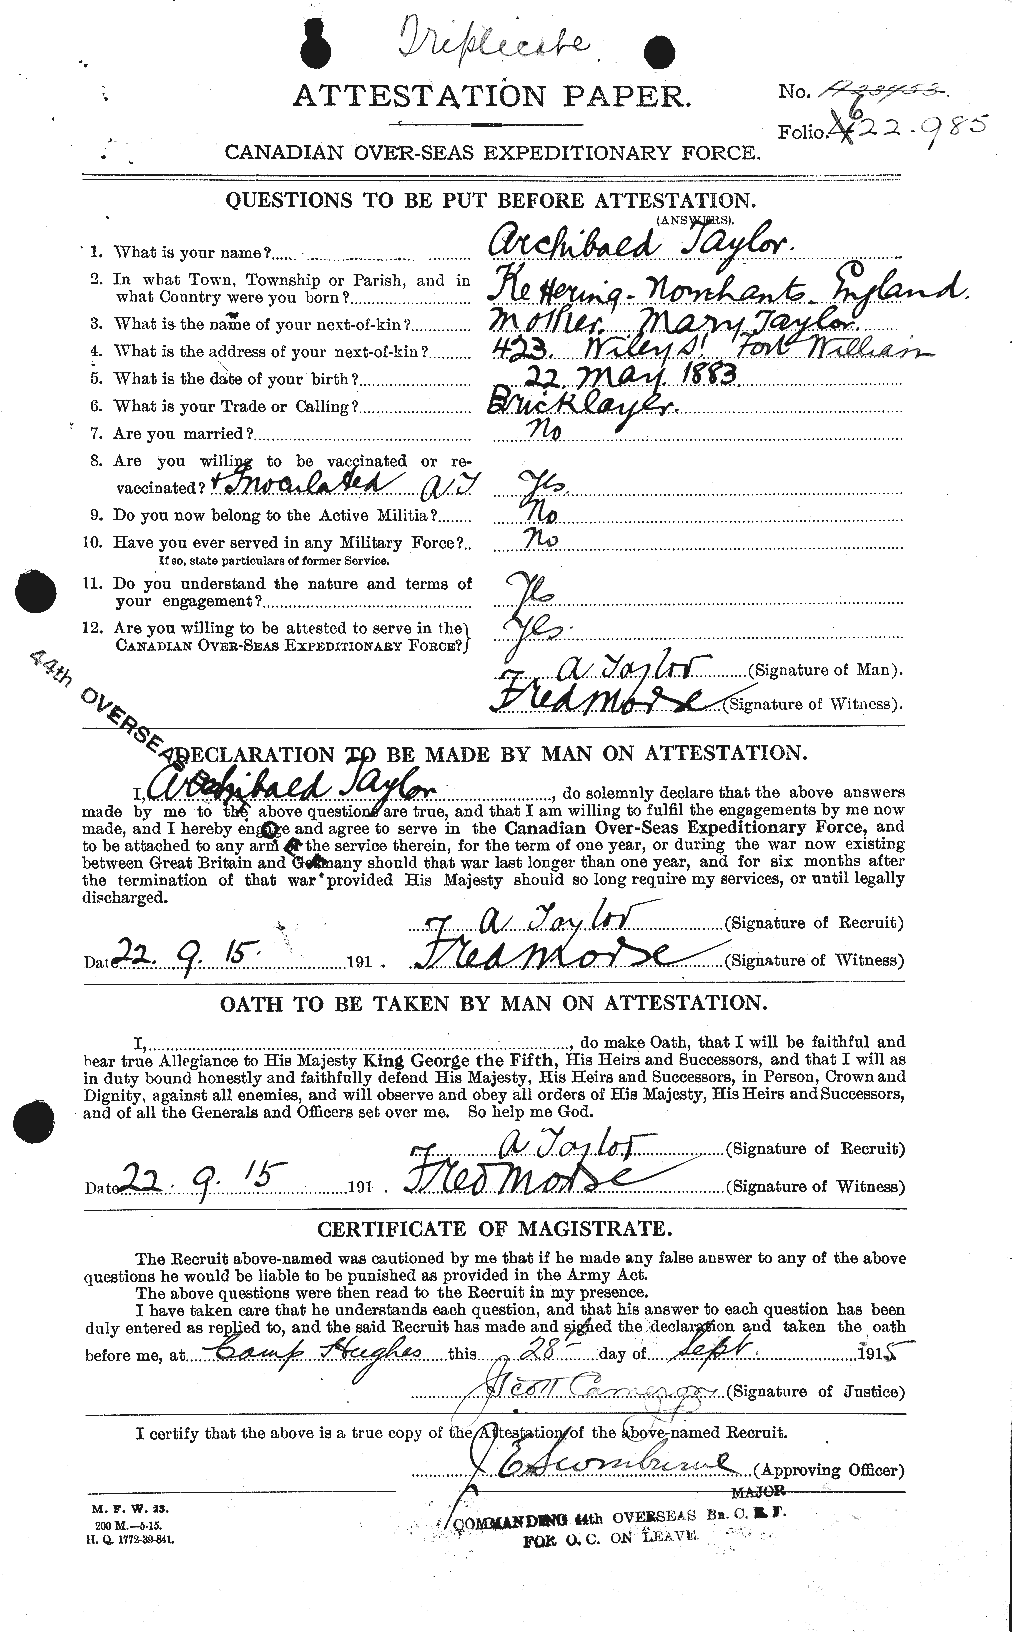 Dossiers du Personnel de la Première Guerre mondiale - CEC 626236a